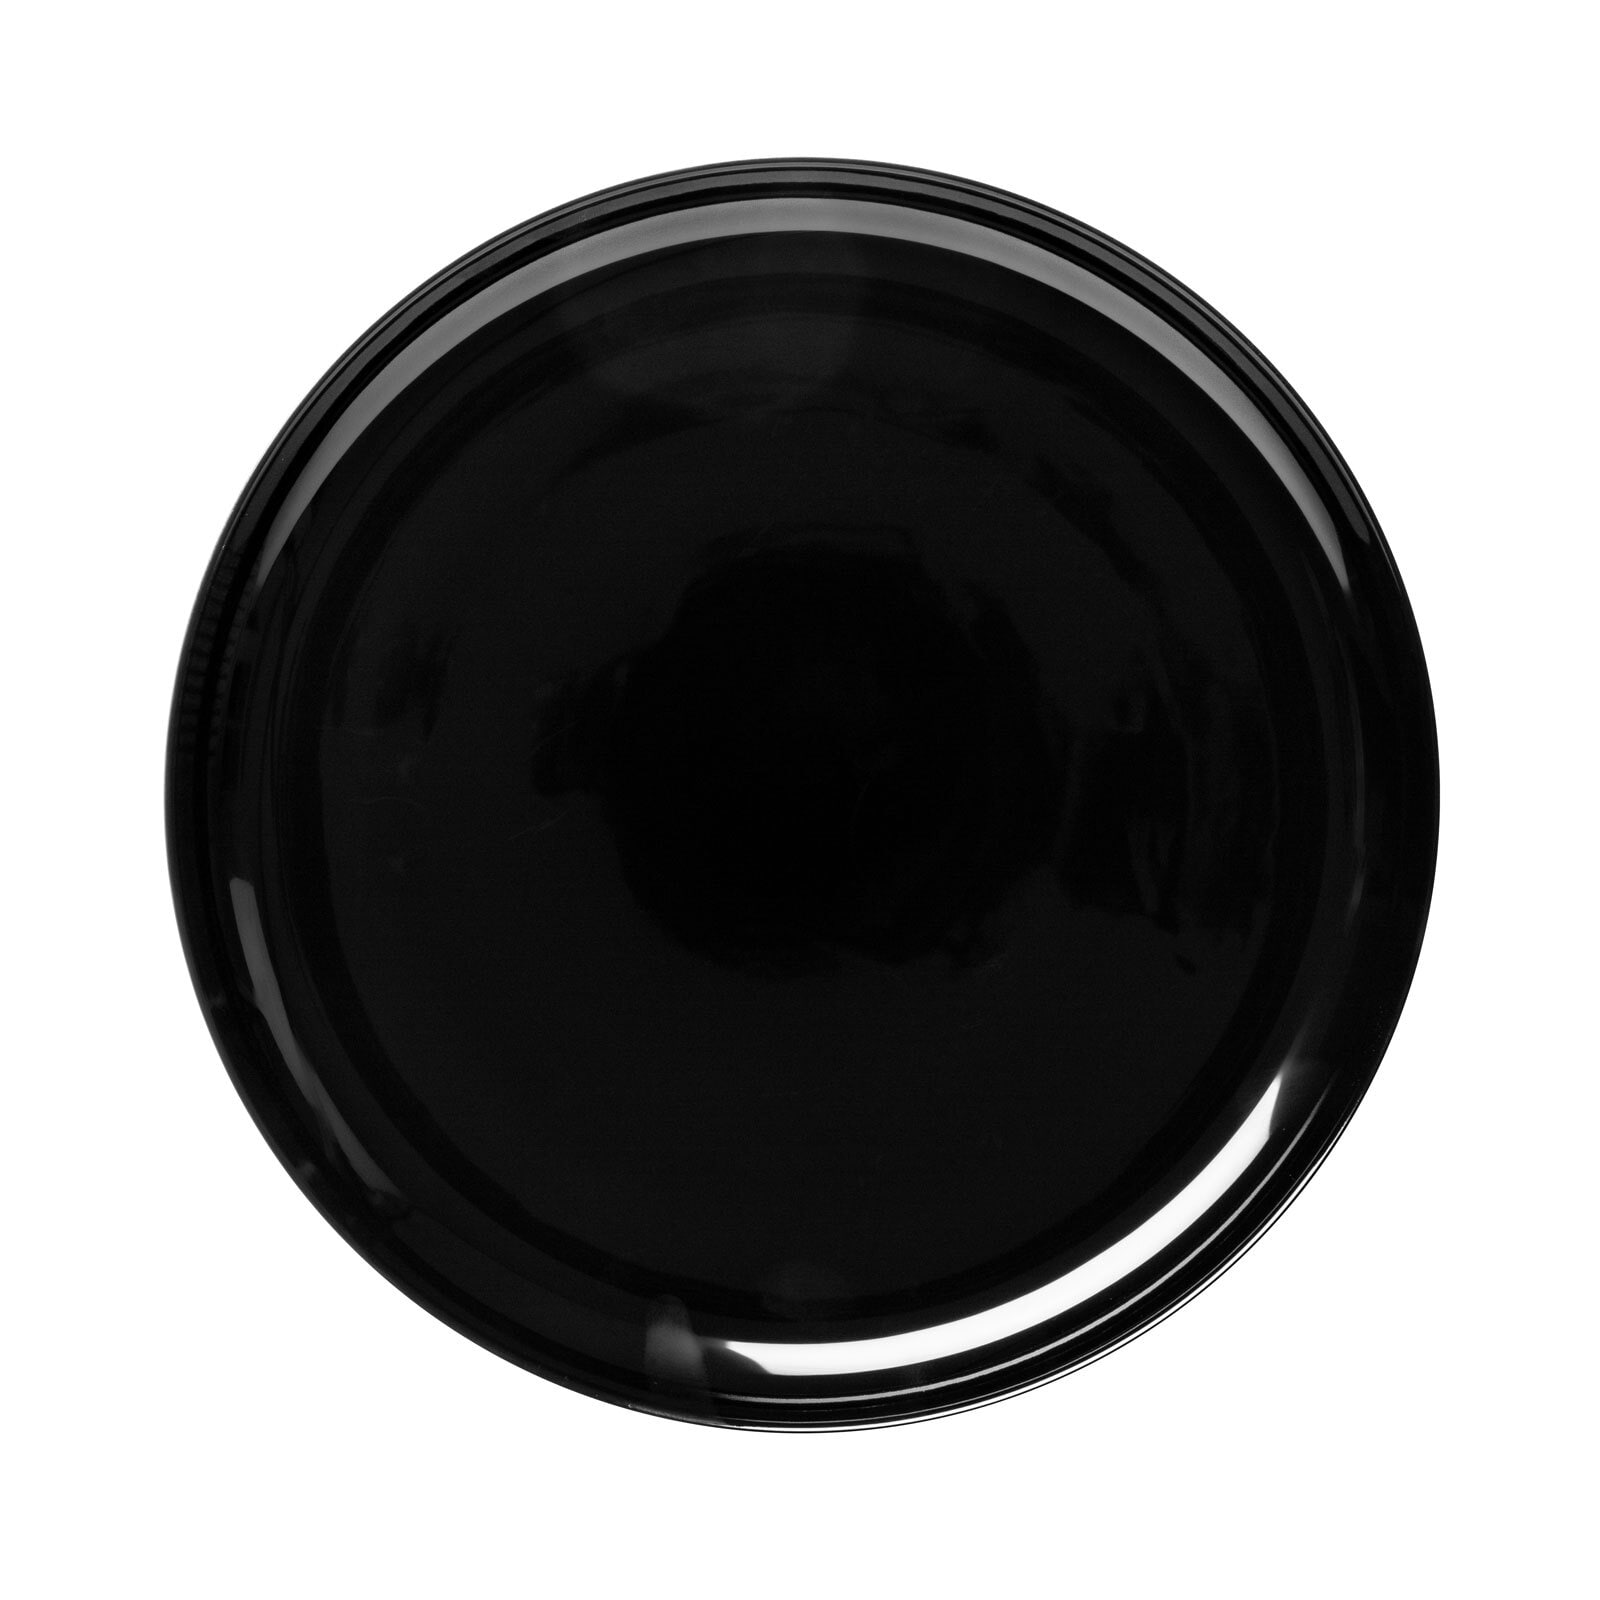 Seltmann Weiden Tafelservice LIDO SOLID BLACK 12-teilig schwarz/ weiß